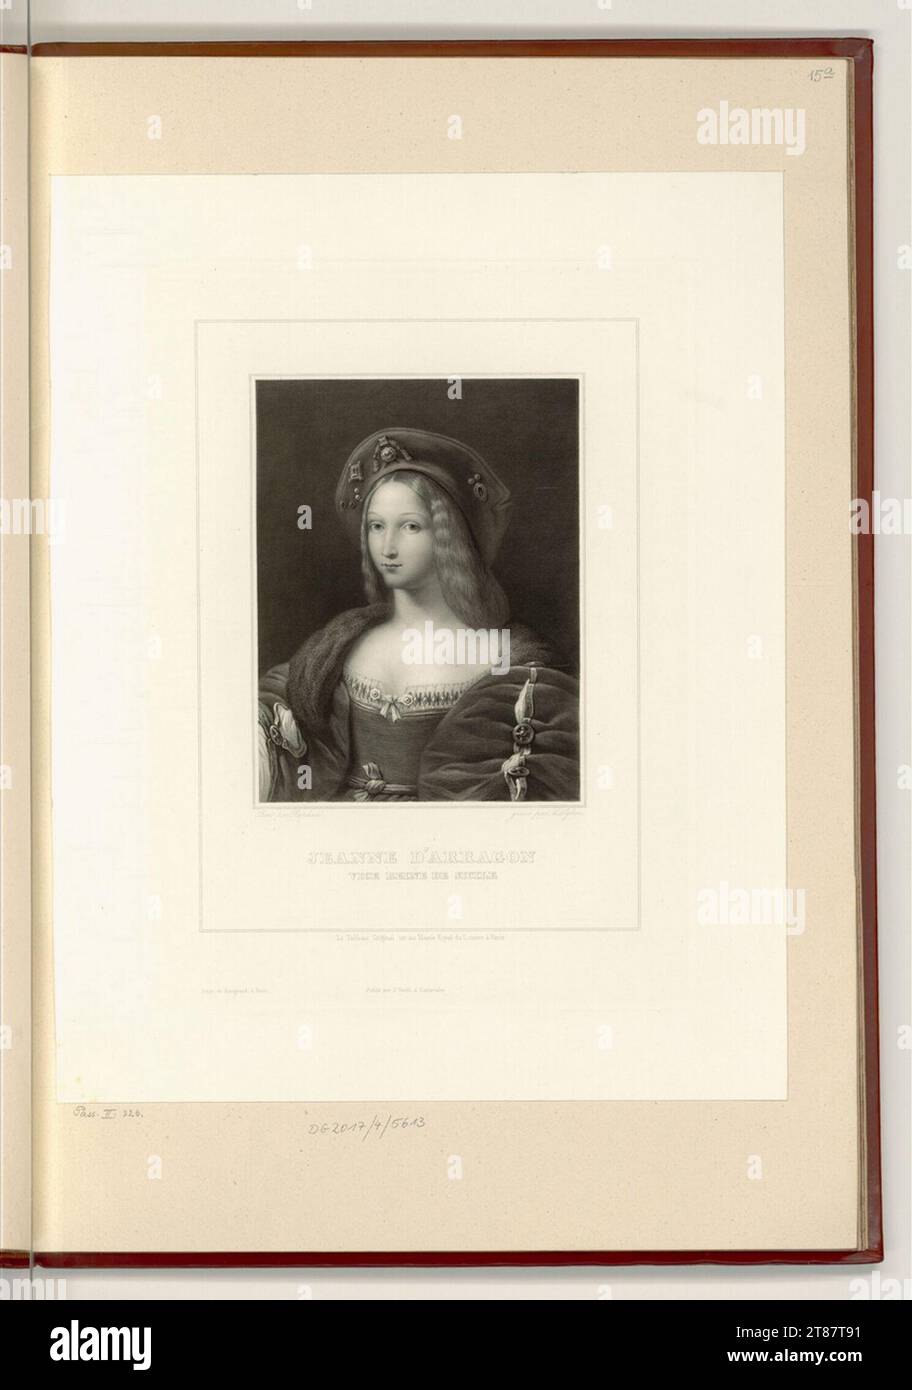 Unbestimmt (graveur) Jeanne d’OLOGON. Gravure sur cuivre impression 19. Siècle , 19e siècle Banque D'Images